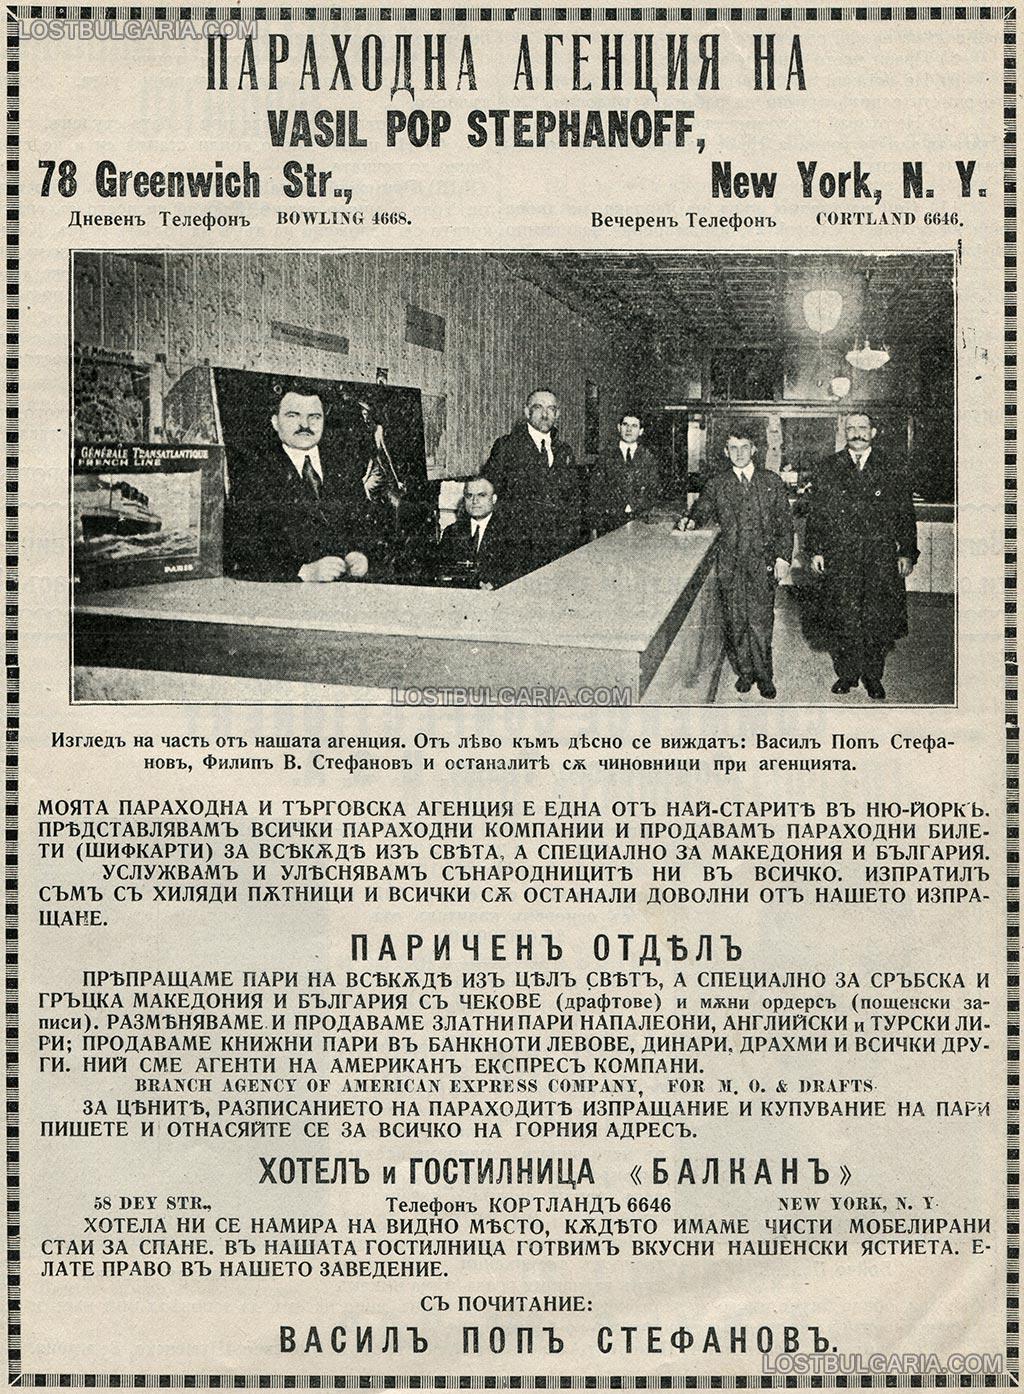 Реклама на параходната агенция, паричен отдел и хотел-гостилница "Балкан" на Васил Попстефанов (близък план, вляво на снимката) в Ню Йорк, 1921 г.